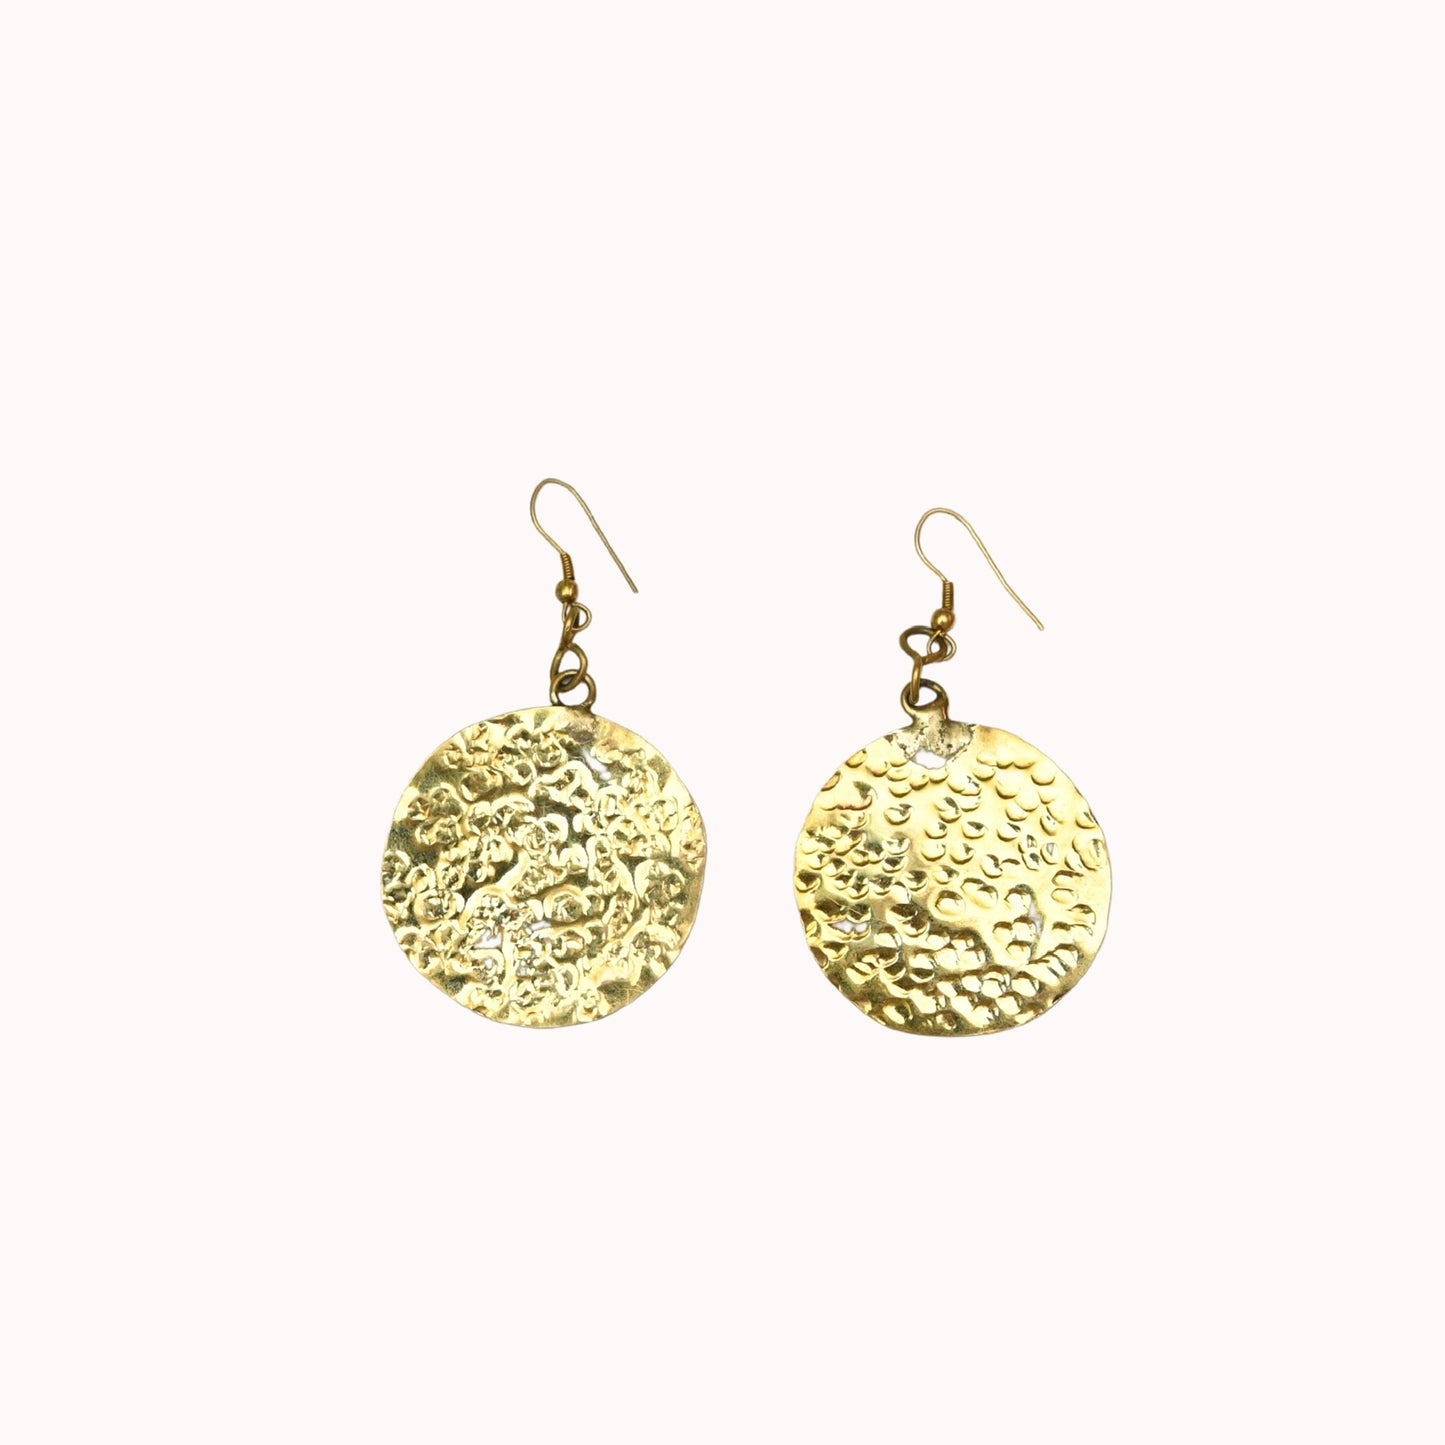 Gorofa brass earrings